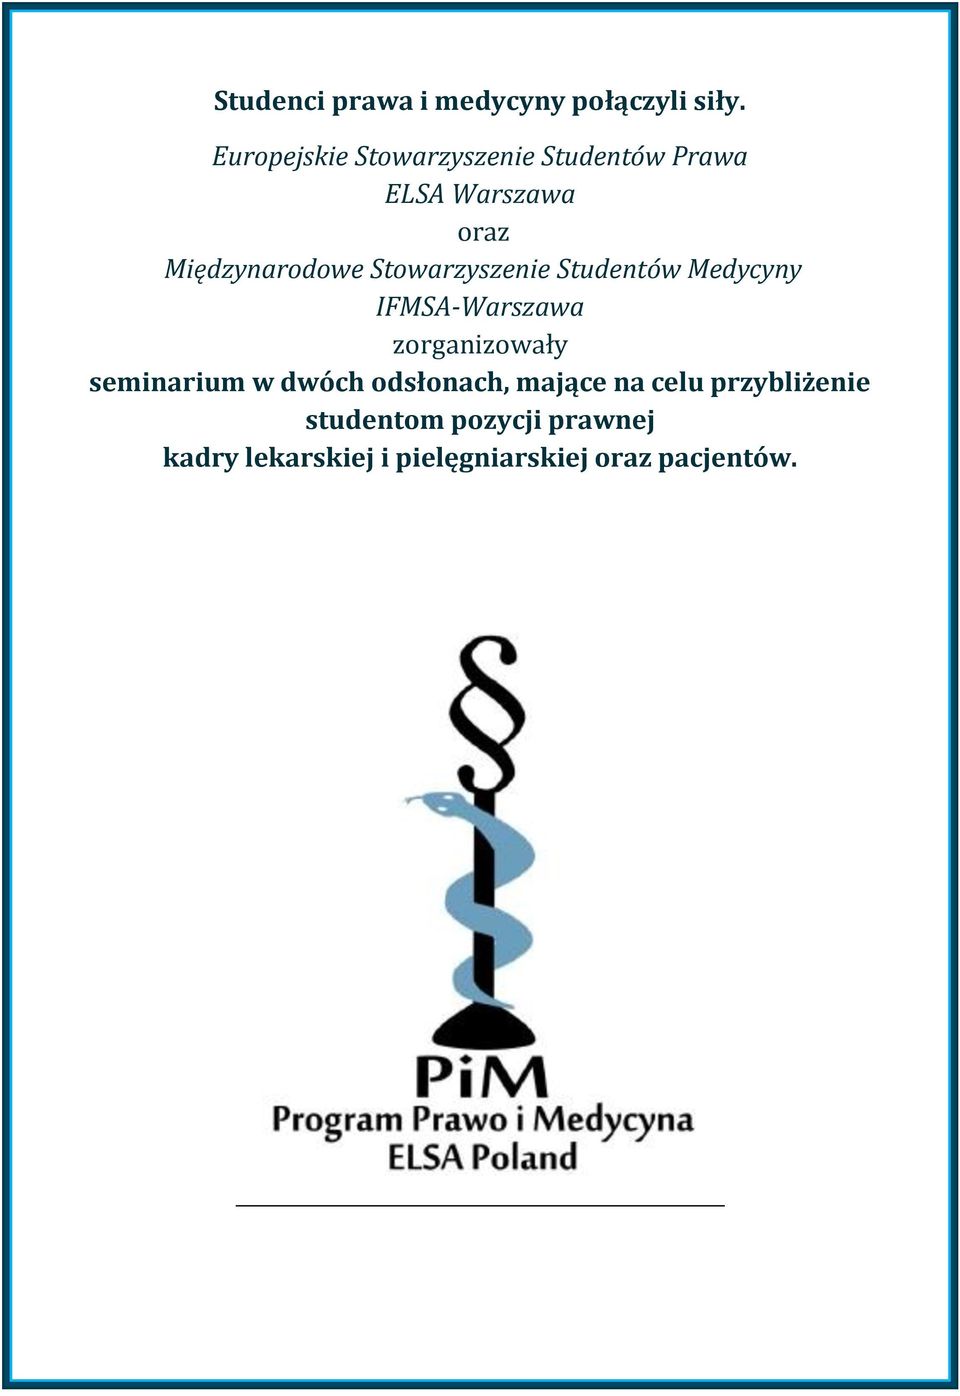 Stowarzyszenie Studentów Medycyny IFMSA-Warszawa zorganizowały seminarium w